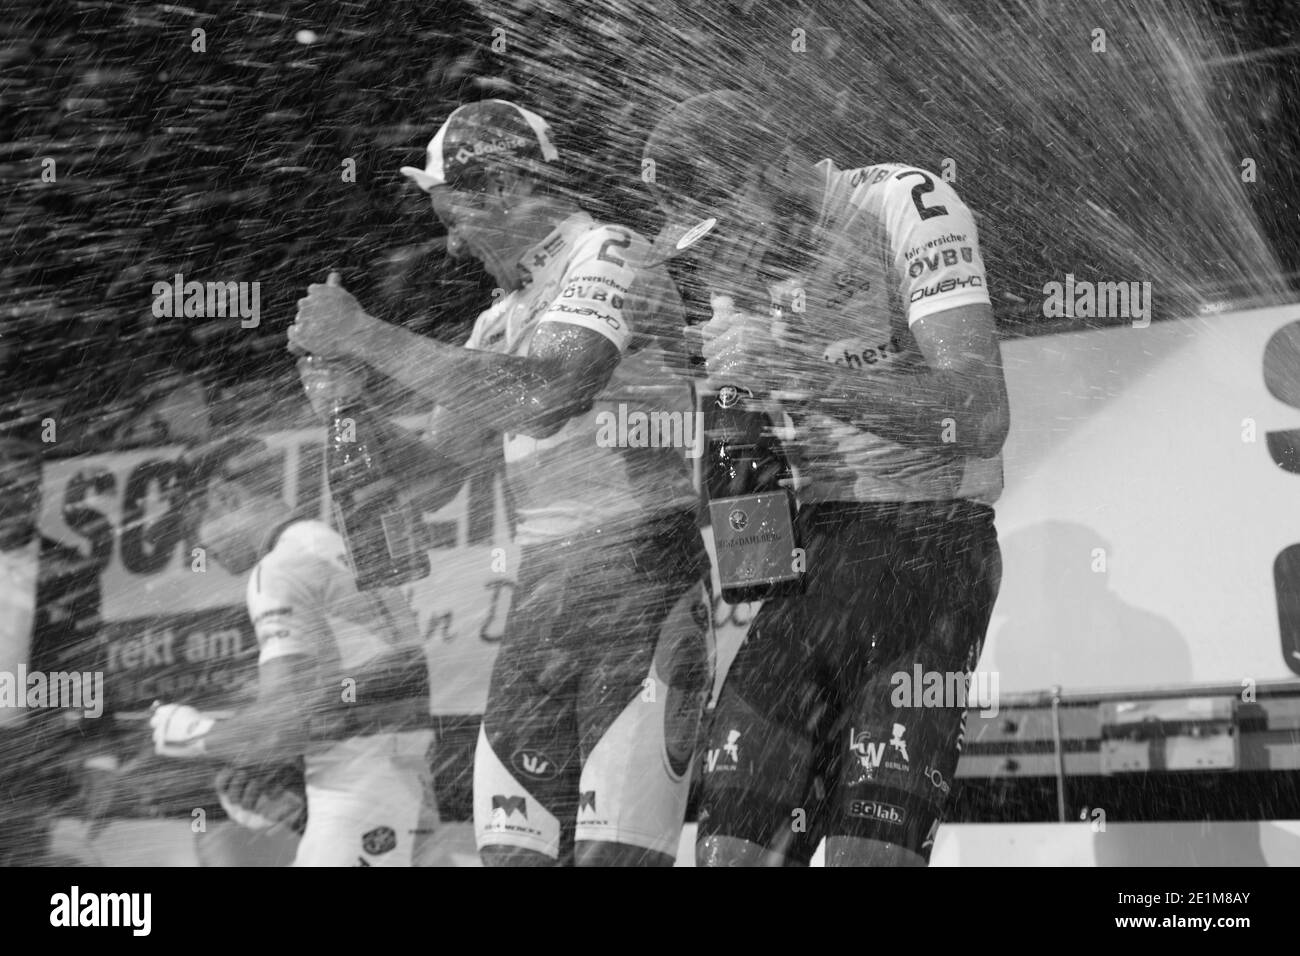 Le gagnant célèbre avec du champagne sur le podium lors de six jours de course de cyling sur piste de Brême à l'OVB Arena de Brême, Allemagne, janvier 2016 Banque D'Images